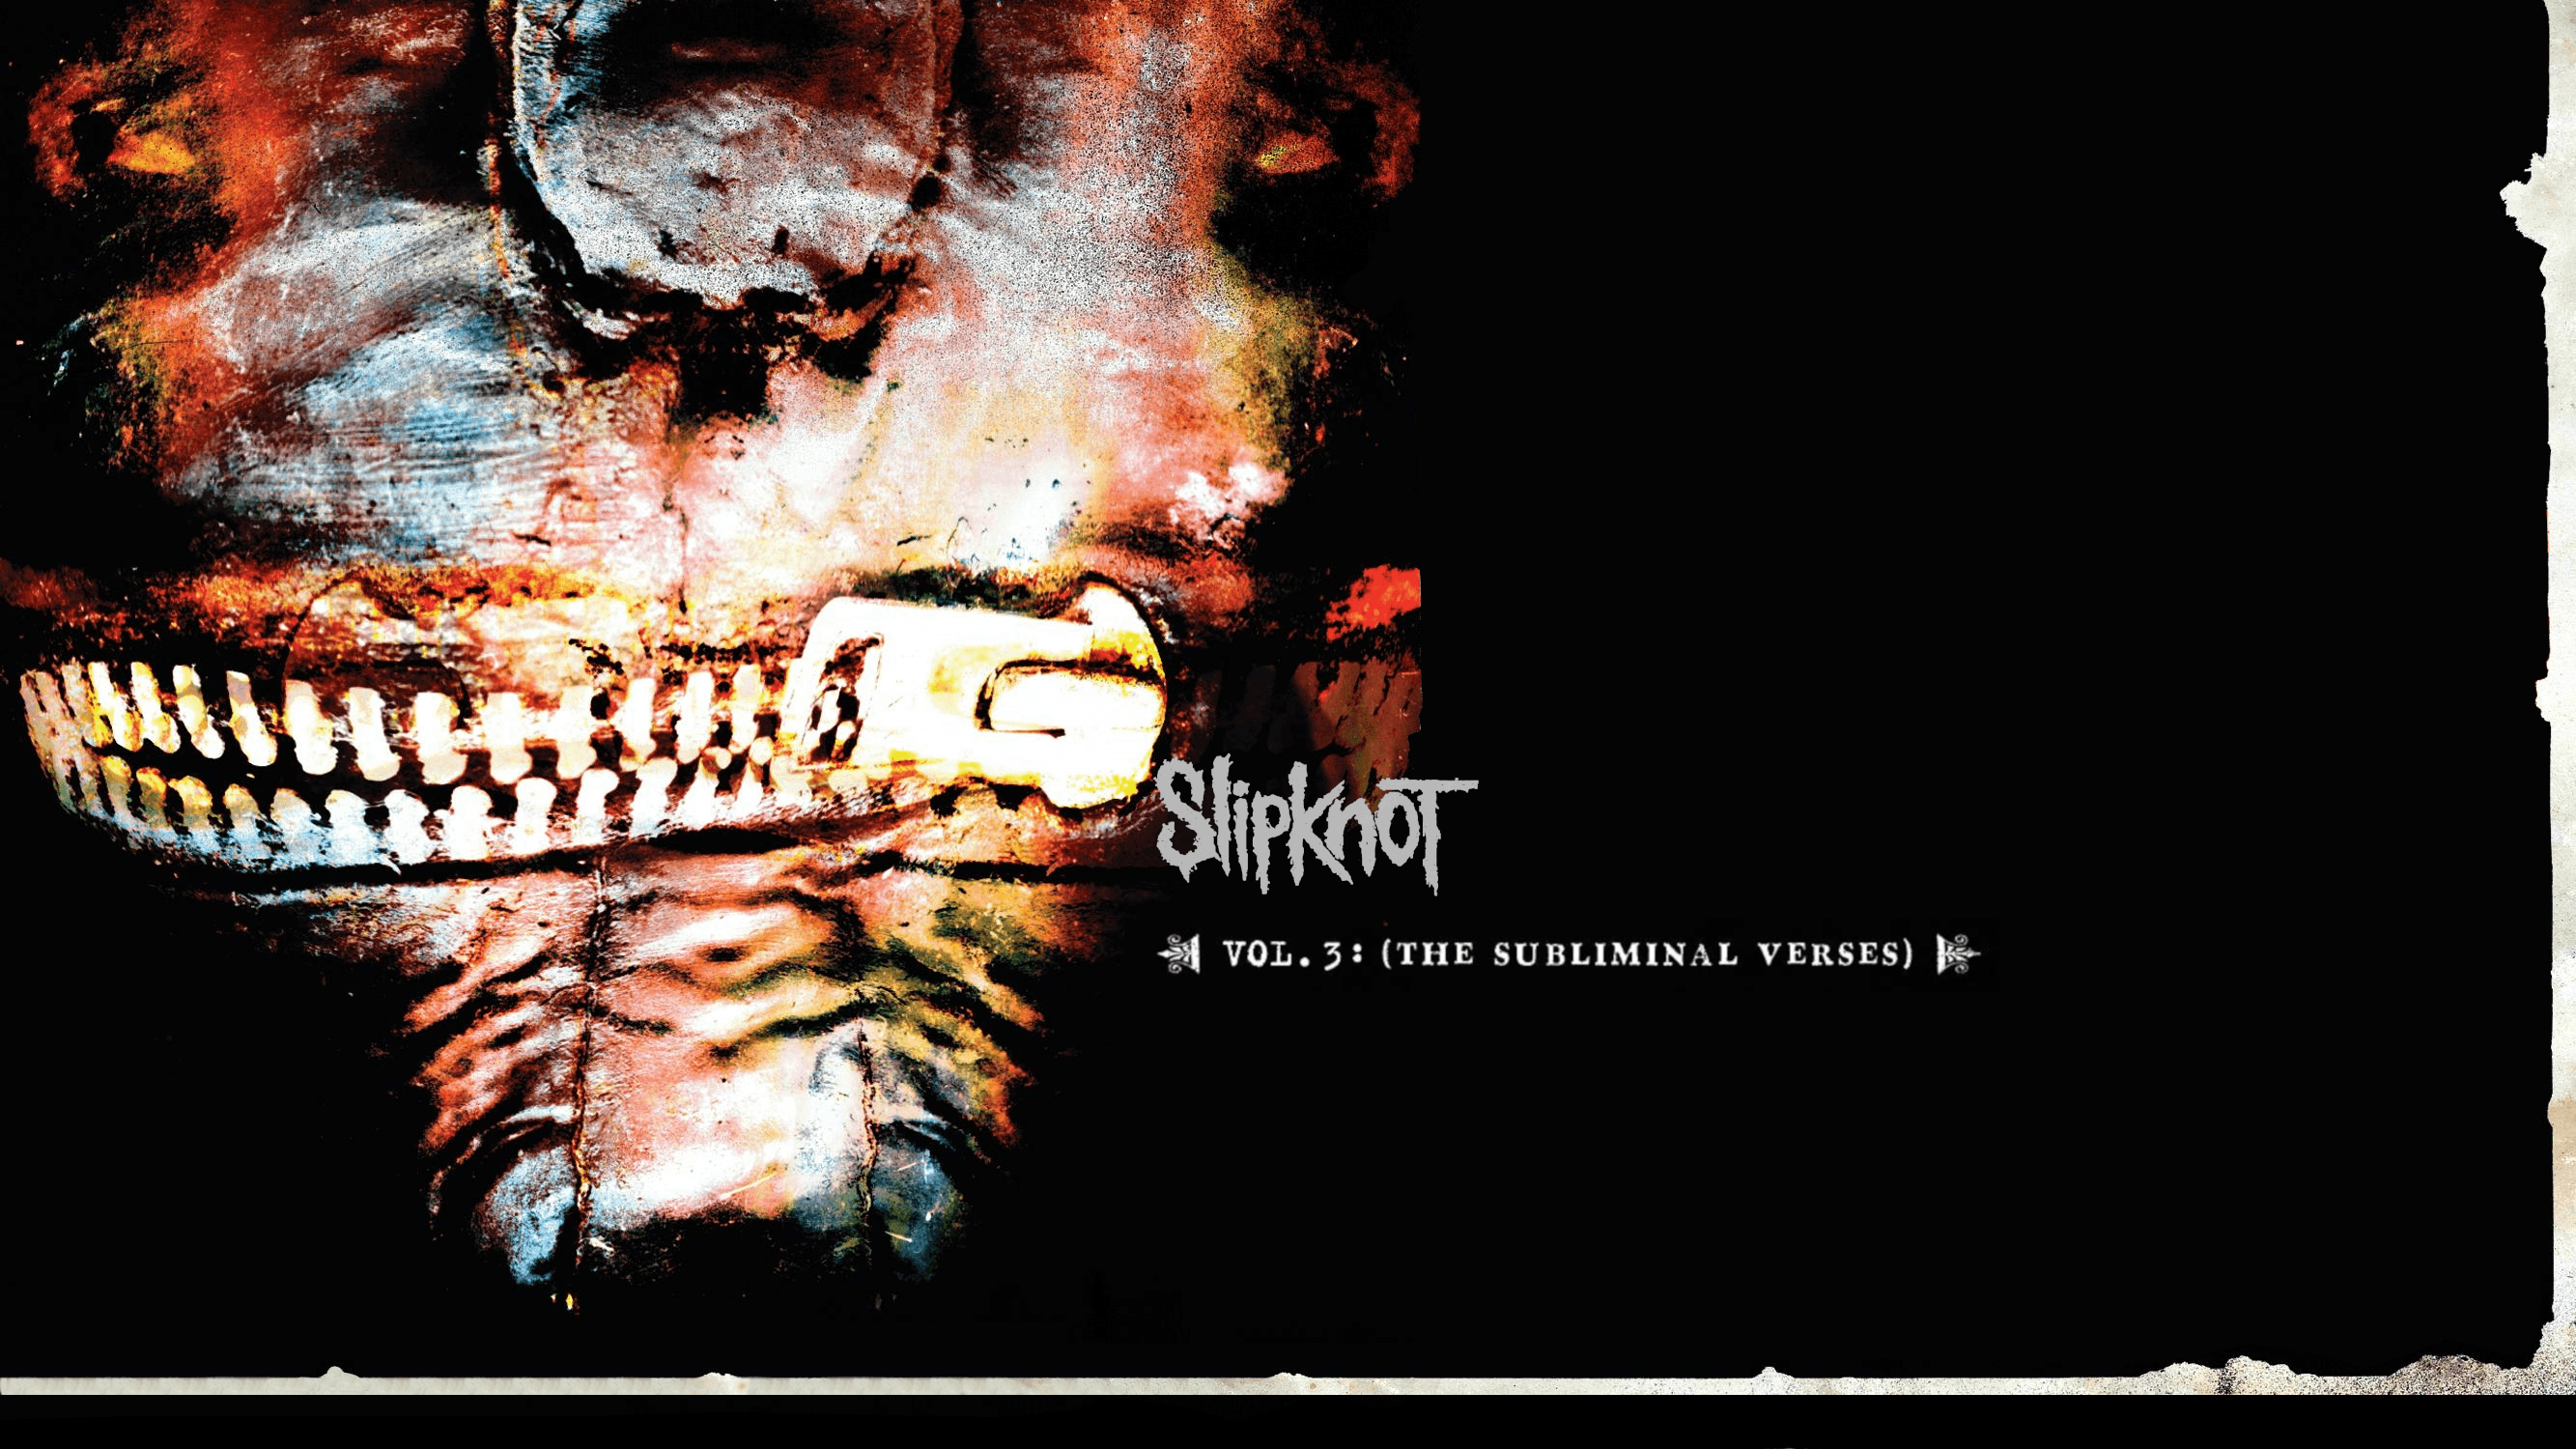 Slipknot Iowa & Vol. 3 Wallpaper